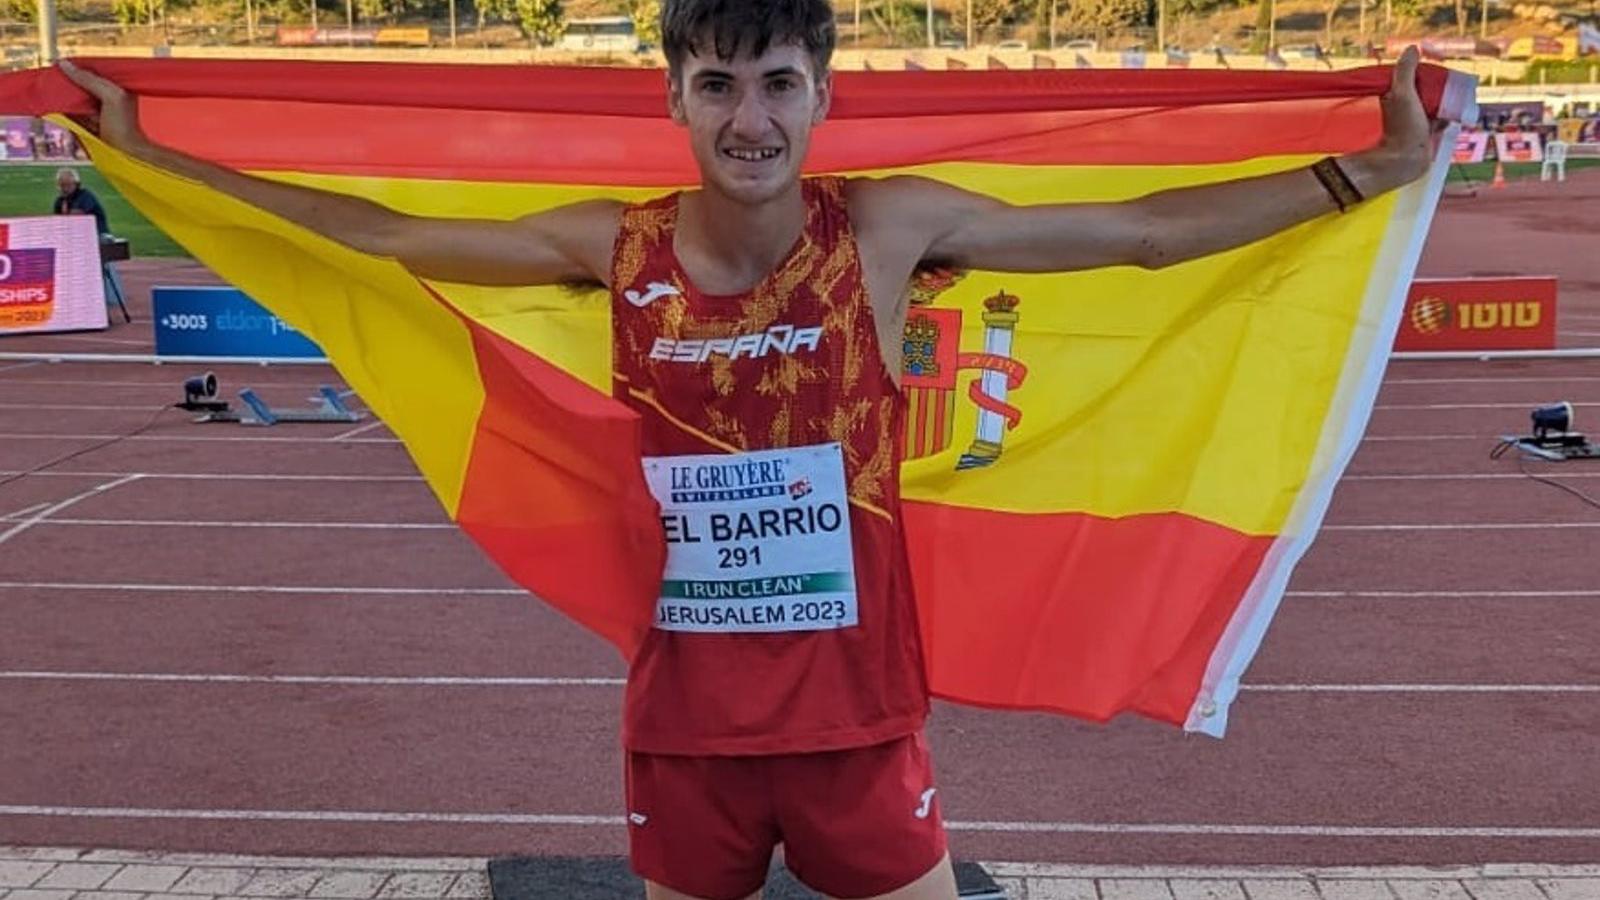 Atletismo.- El español Sergio del Barrio, campeón de Europa Sub 20 de 3.000 obstáculos